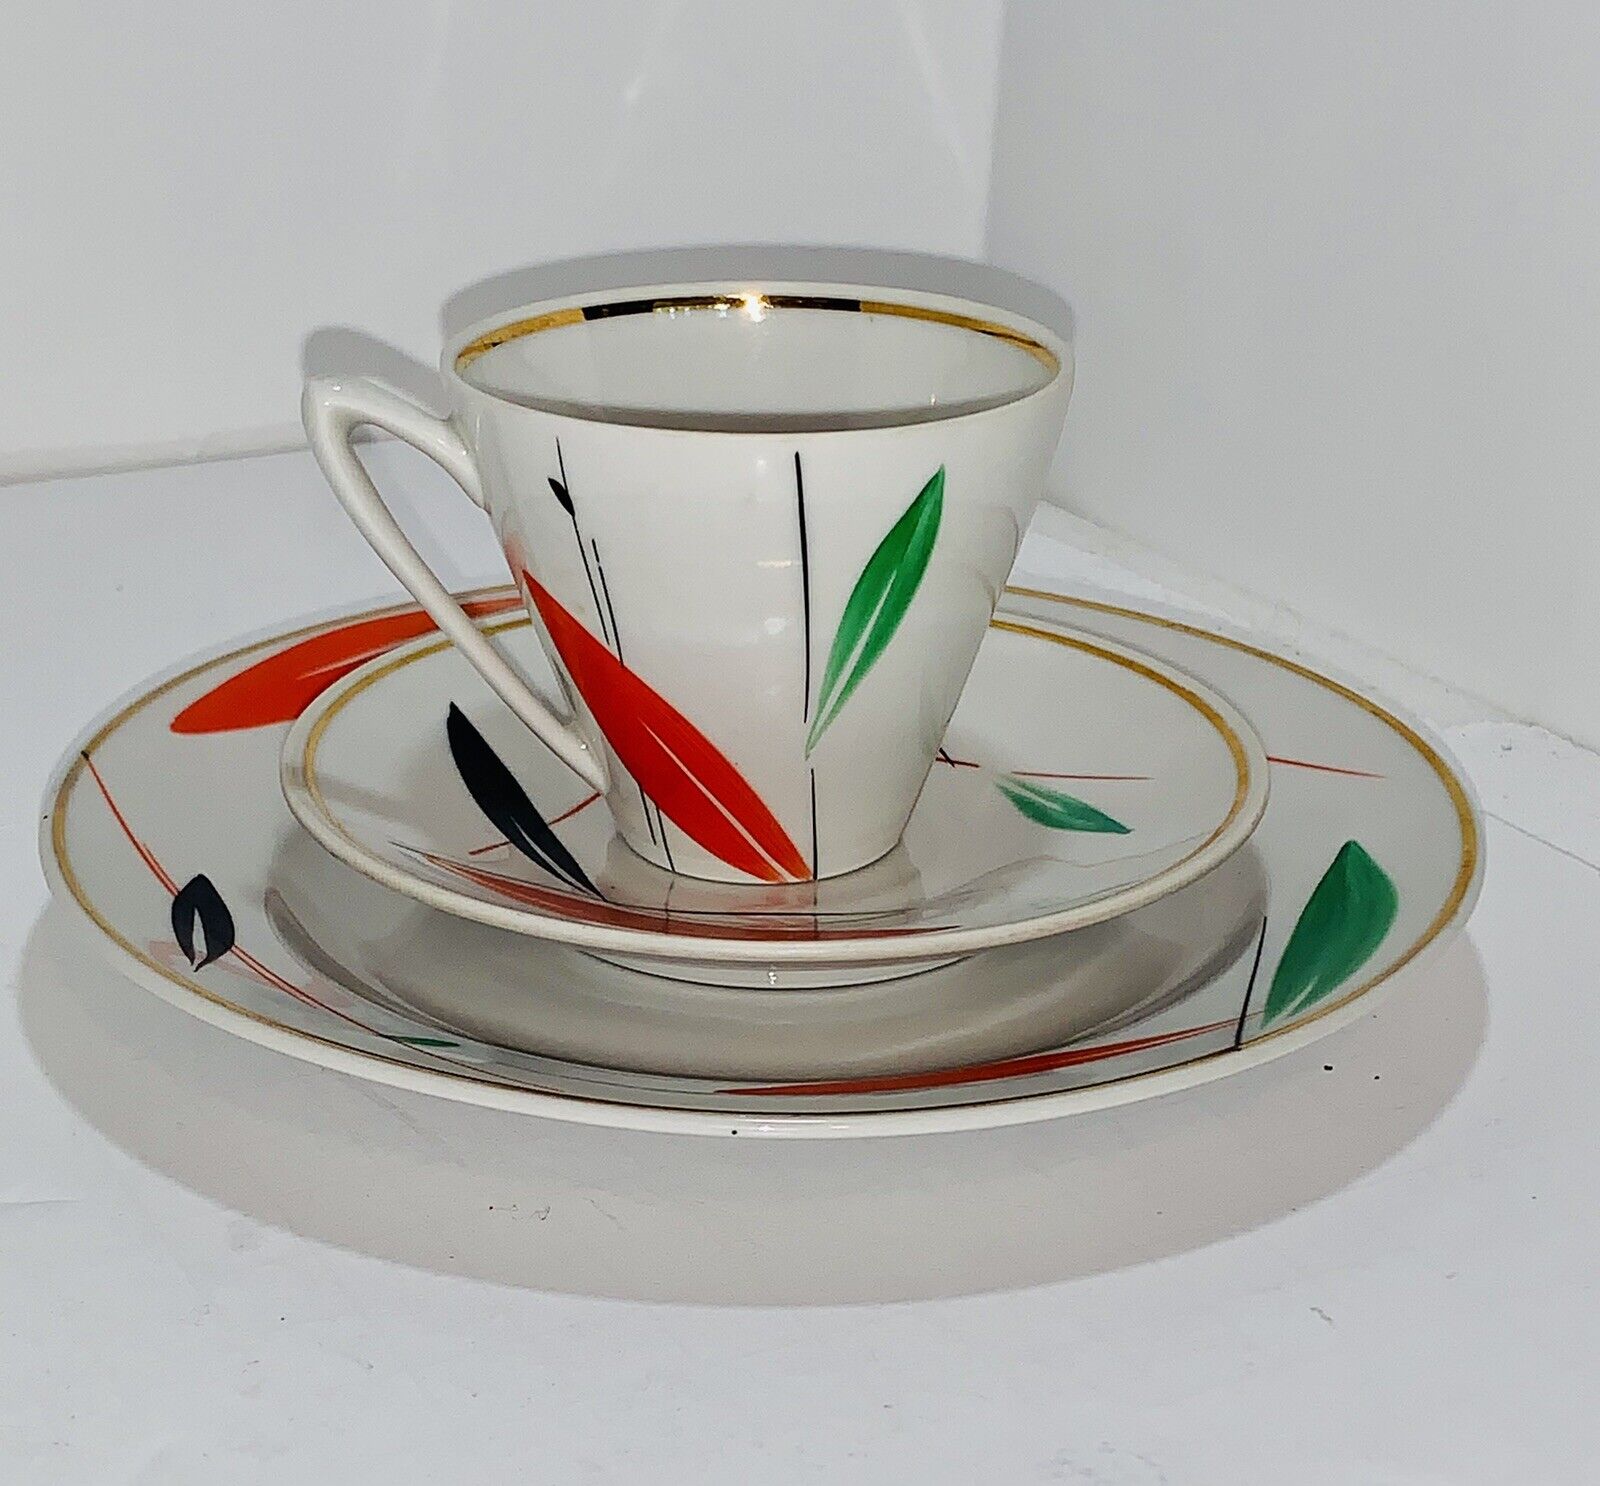 3 Piece Tea Cup Set Ukrainian SSR 1960s Porcelain Gold Rim Org Gr, Blk Vint Rare